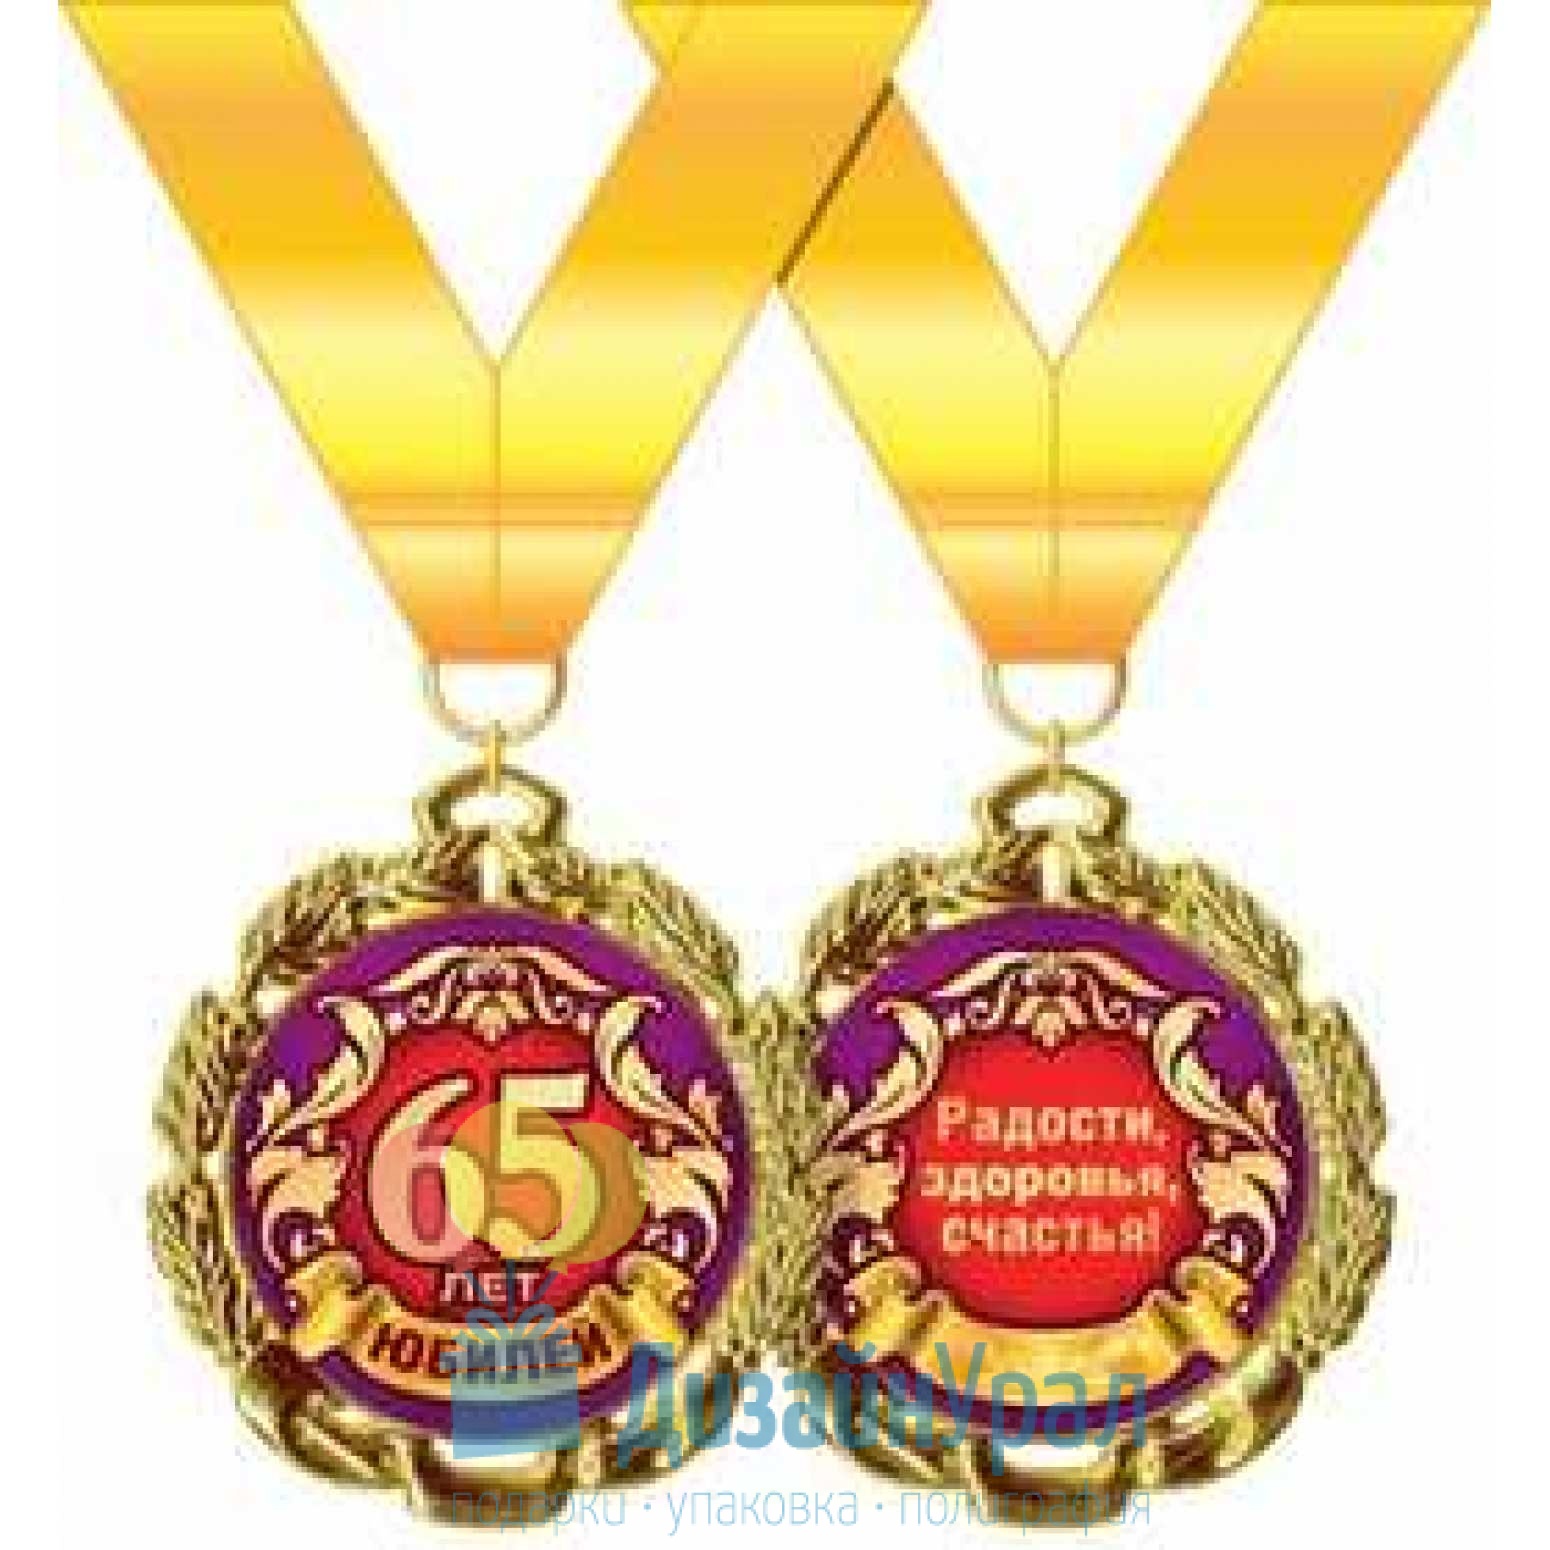 Организации 65 лет. Медаль с юбилеем. Медаль 65 лет. Медаль "с юбилеем 65". Медаль *с днем рождения*.